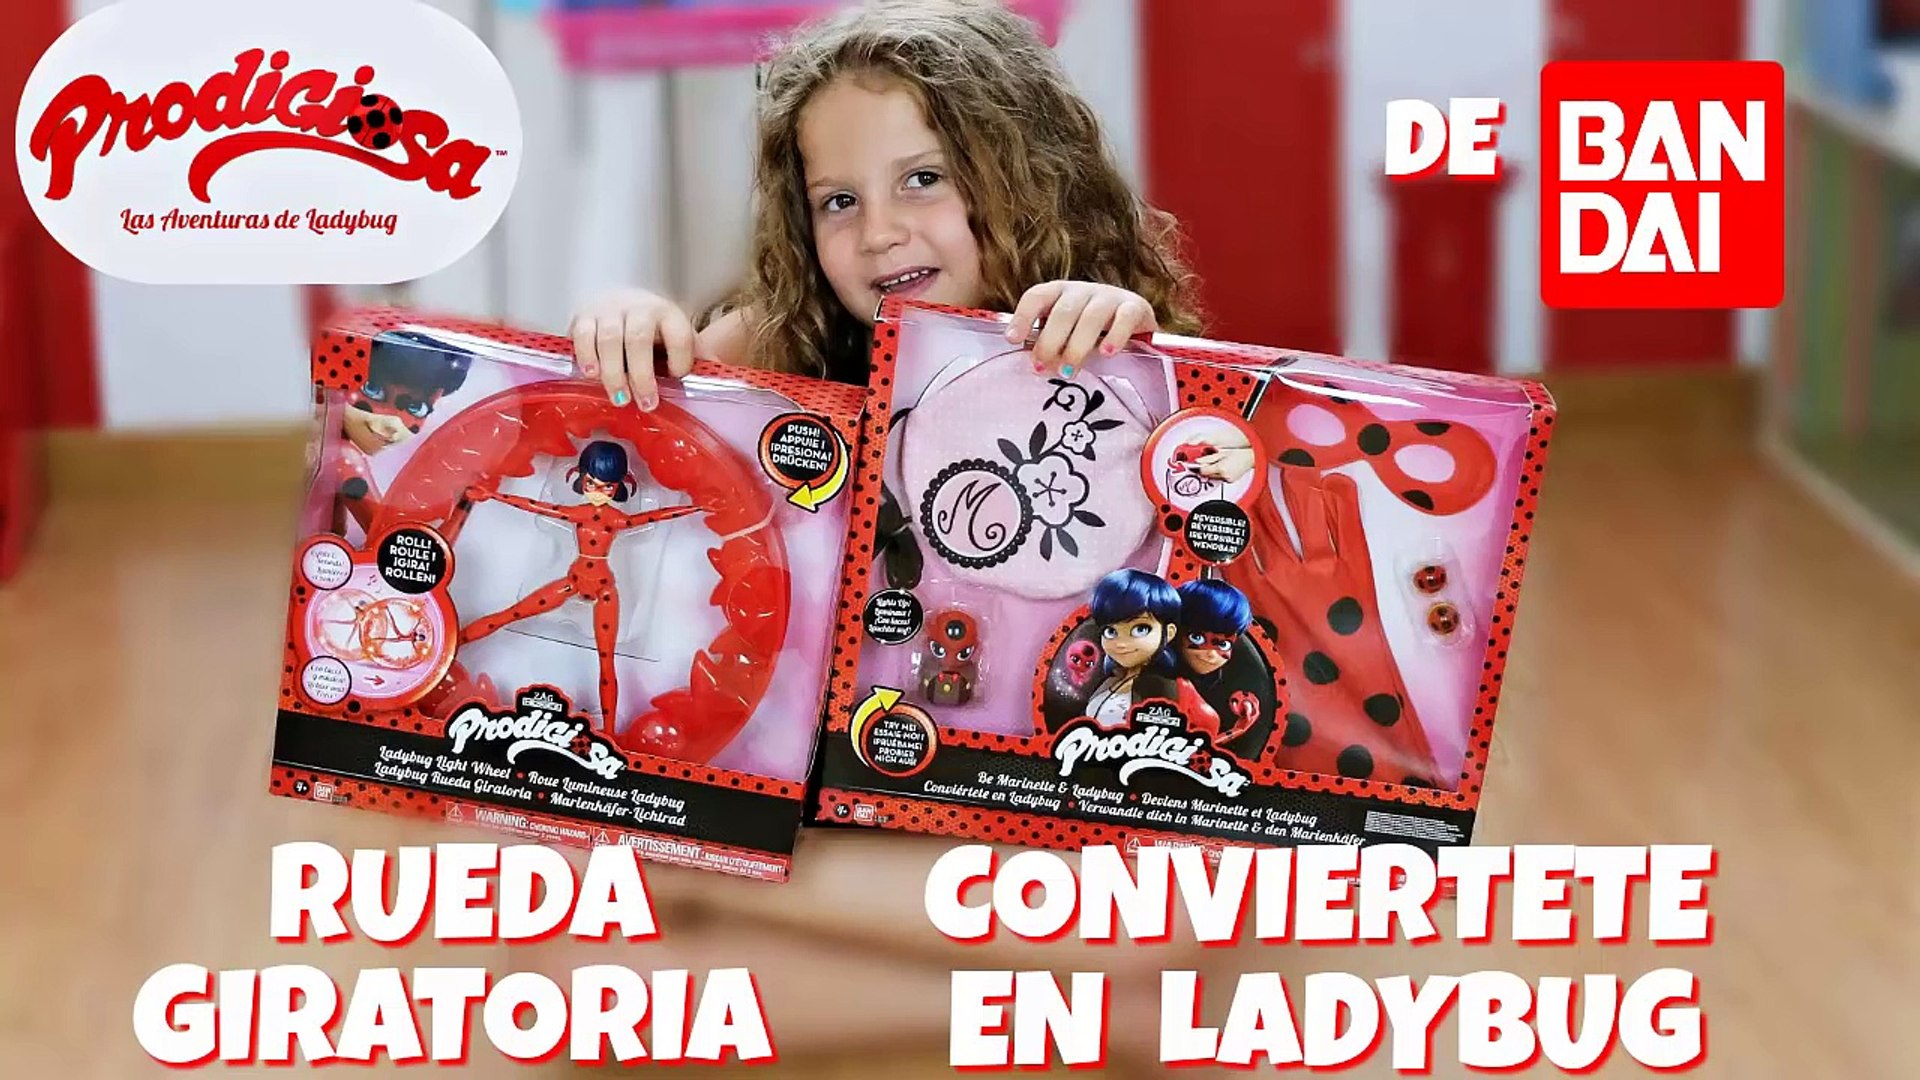 Juguetes Ladybug de Bandai - Miraculous Ladybug toys - video Dailymotion